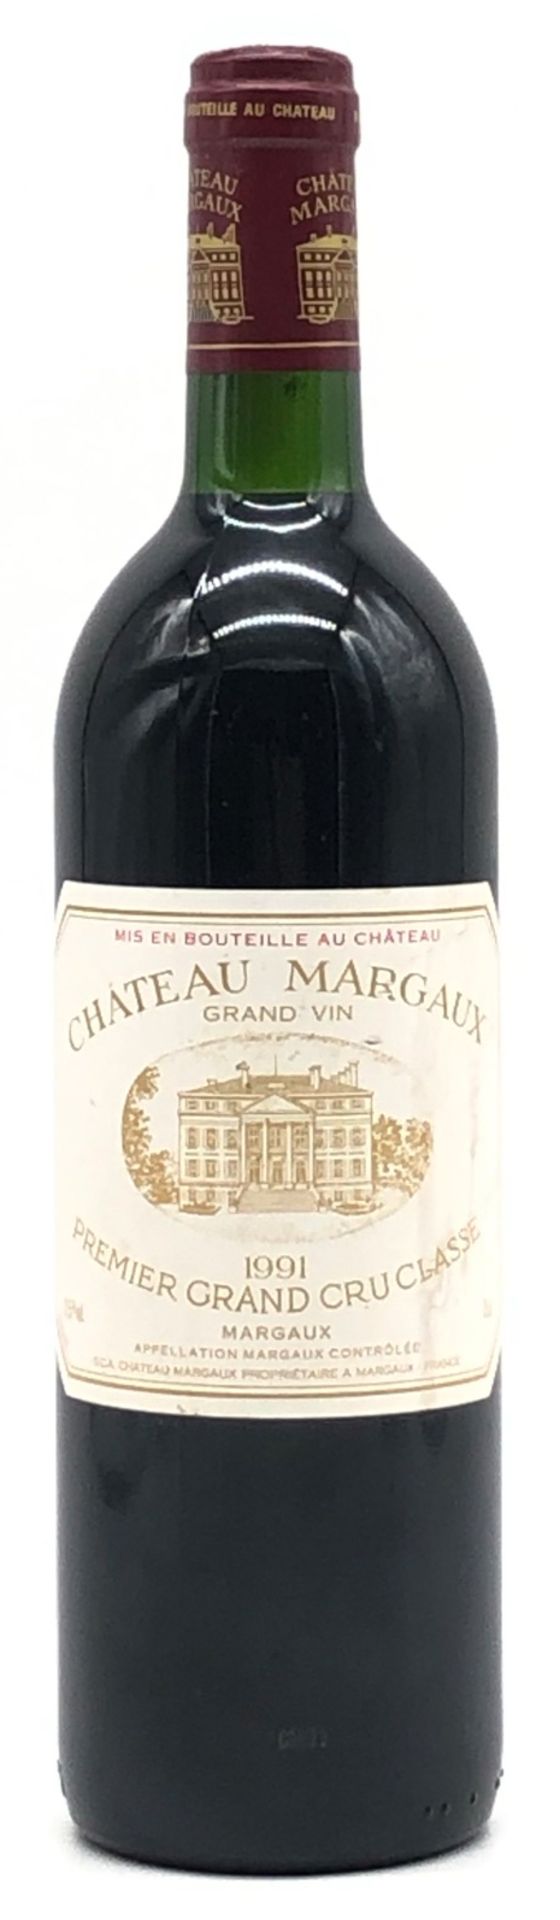 1991 Chateau Margaux Grand Vin. Premier Grand Cru Classe.